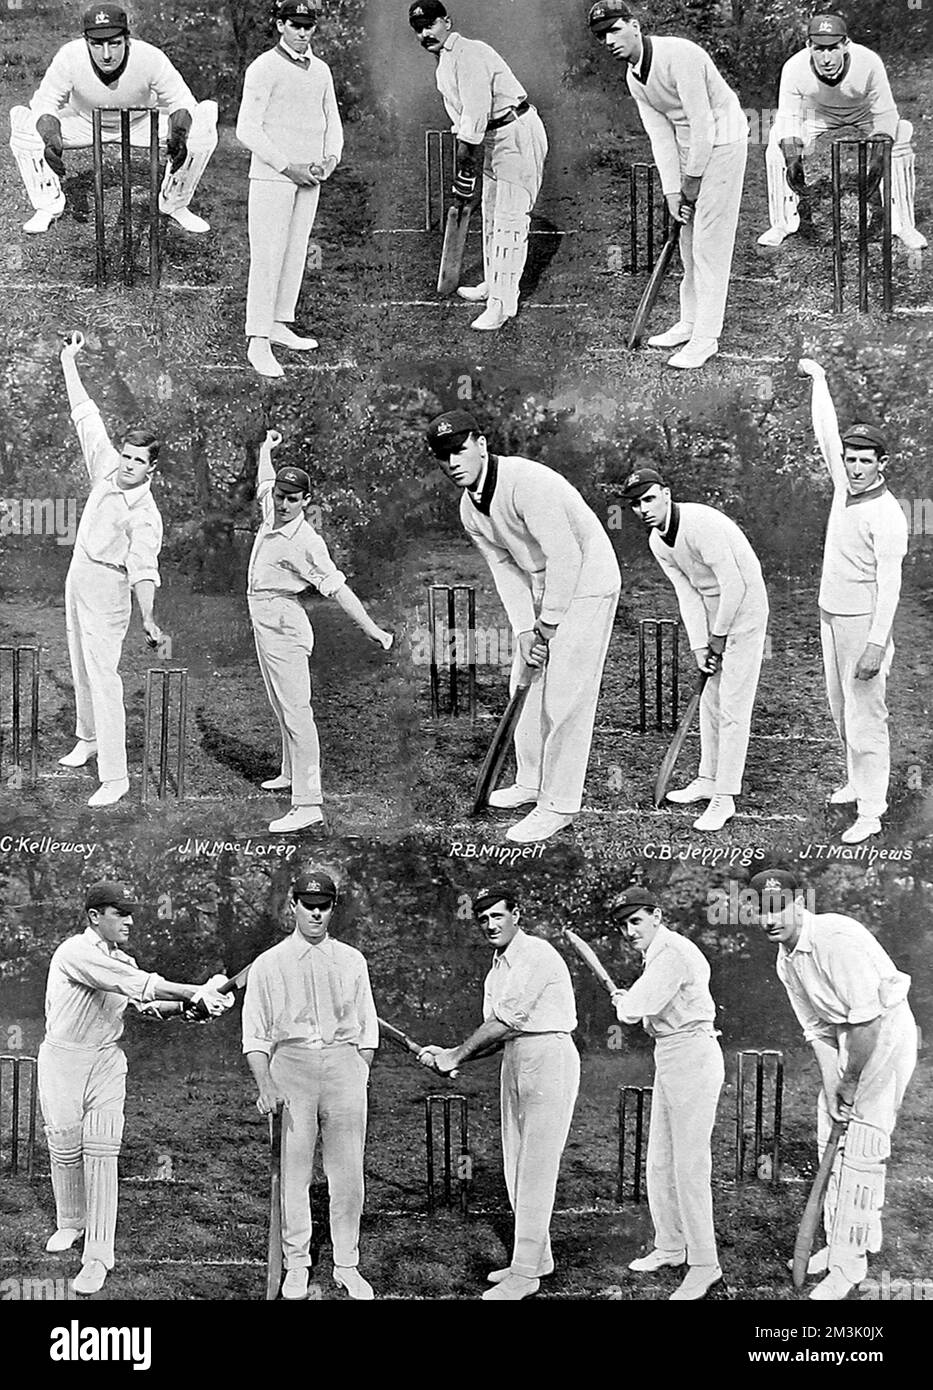 Montaje del Equipo Australiano de Cricket que realizó una gira por Inglaterra en el verano de 1912. Esta gira fue inusual en el sentido de que no se jugaban partidos de prueba, los australianos sólo jugaban por los lados del condado. Fila superior, de izquierda a derecha: H. Webster, W. Whitty, S.E. Gregory (capitán), E.R. Mayne, W. Carkeek. Fila central, de izquierda a derecha: C. Kelleway, J.W. MacLaren, R.B. Minnett, C.B. Jennings, J.T. Matthews. Fila inferior, de izquierda a derecha: C.G. Macartney, W. Bardsley, D. Smith, G.R. Hazlitt, S.H. Esmeril. 1912 Foto de stock